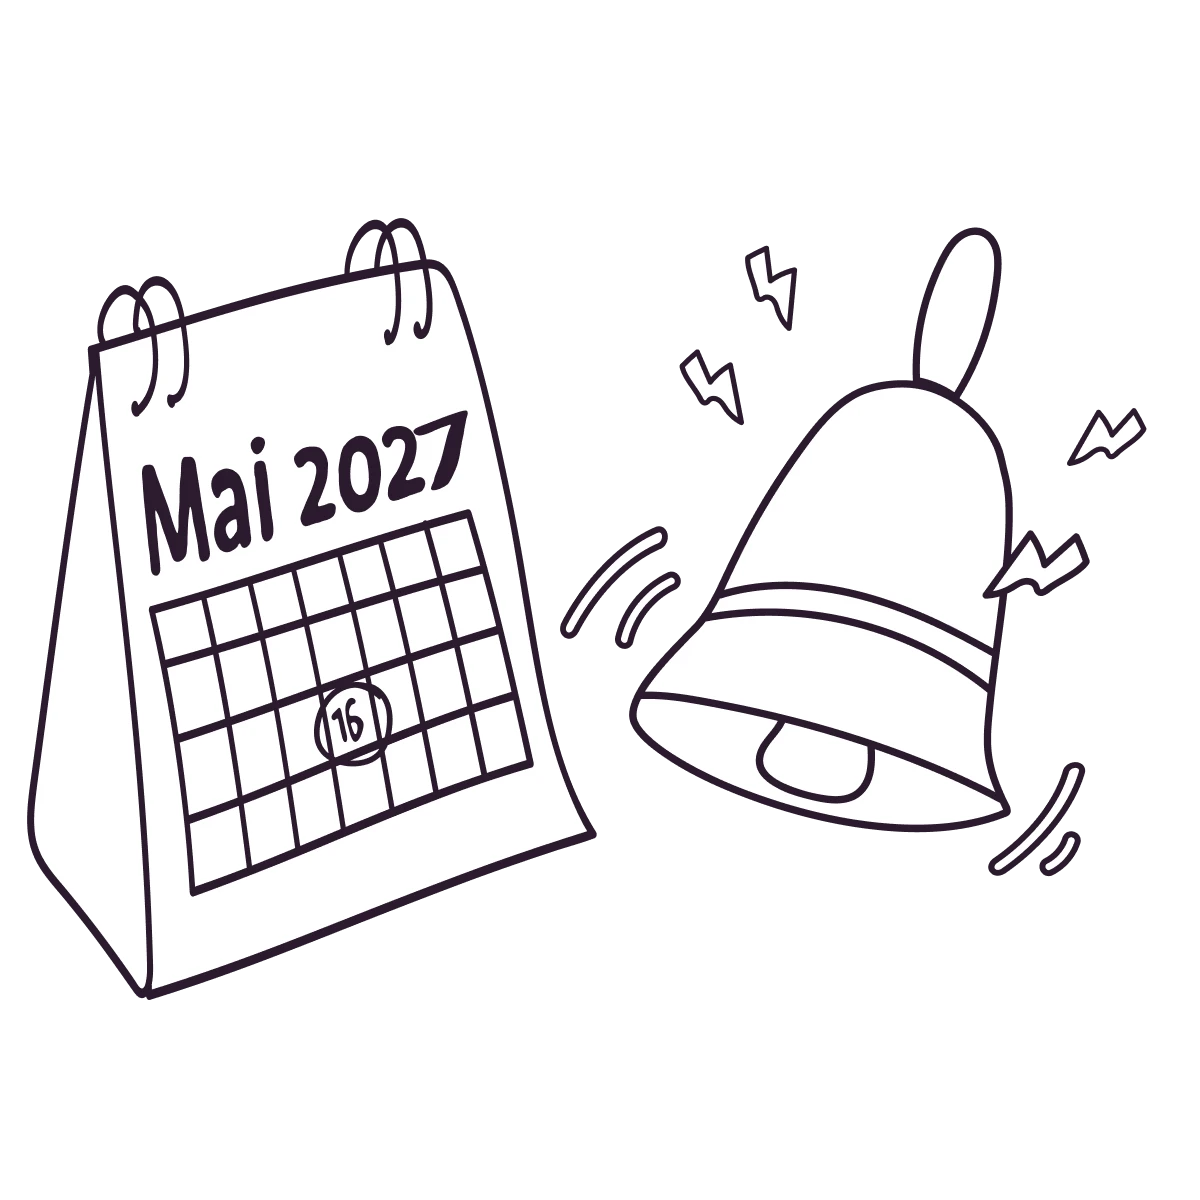 Ein Kalender zeigt das Ende einer Frist an und eine Glocke klingelt daneben.